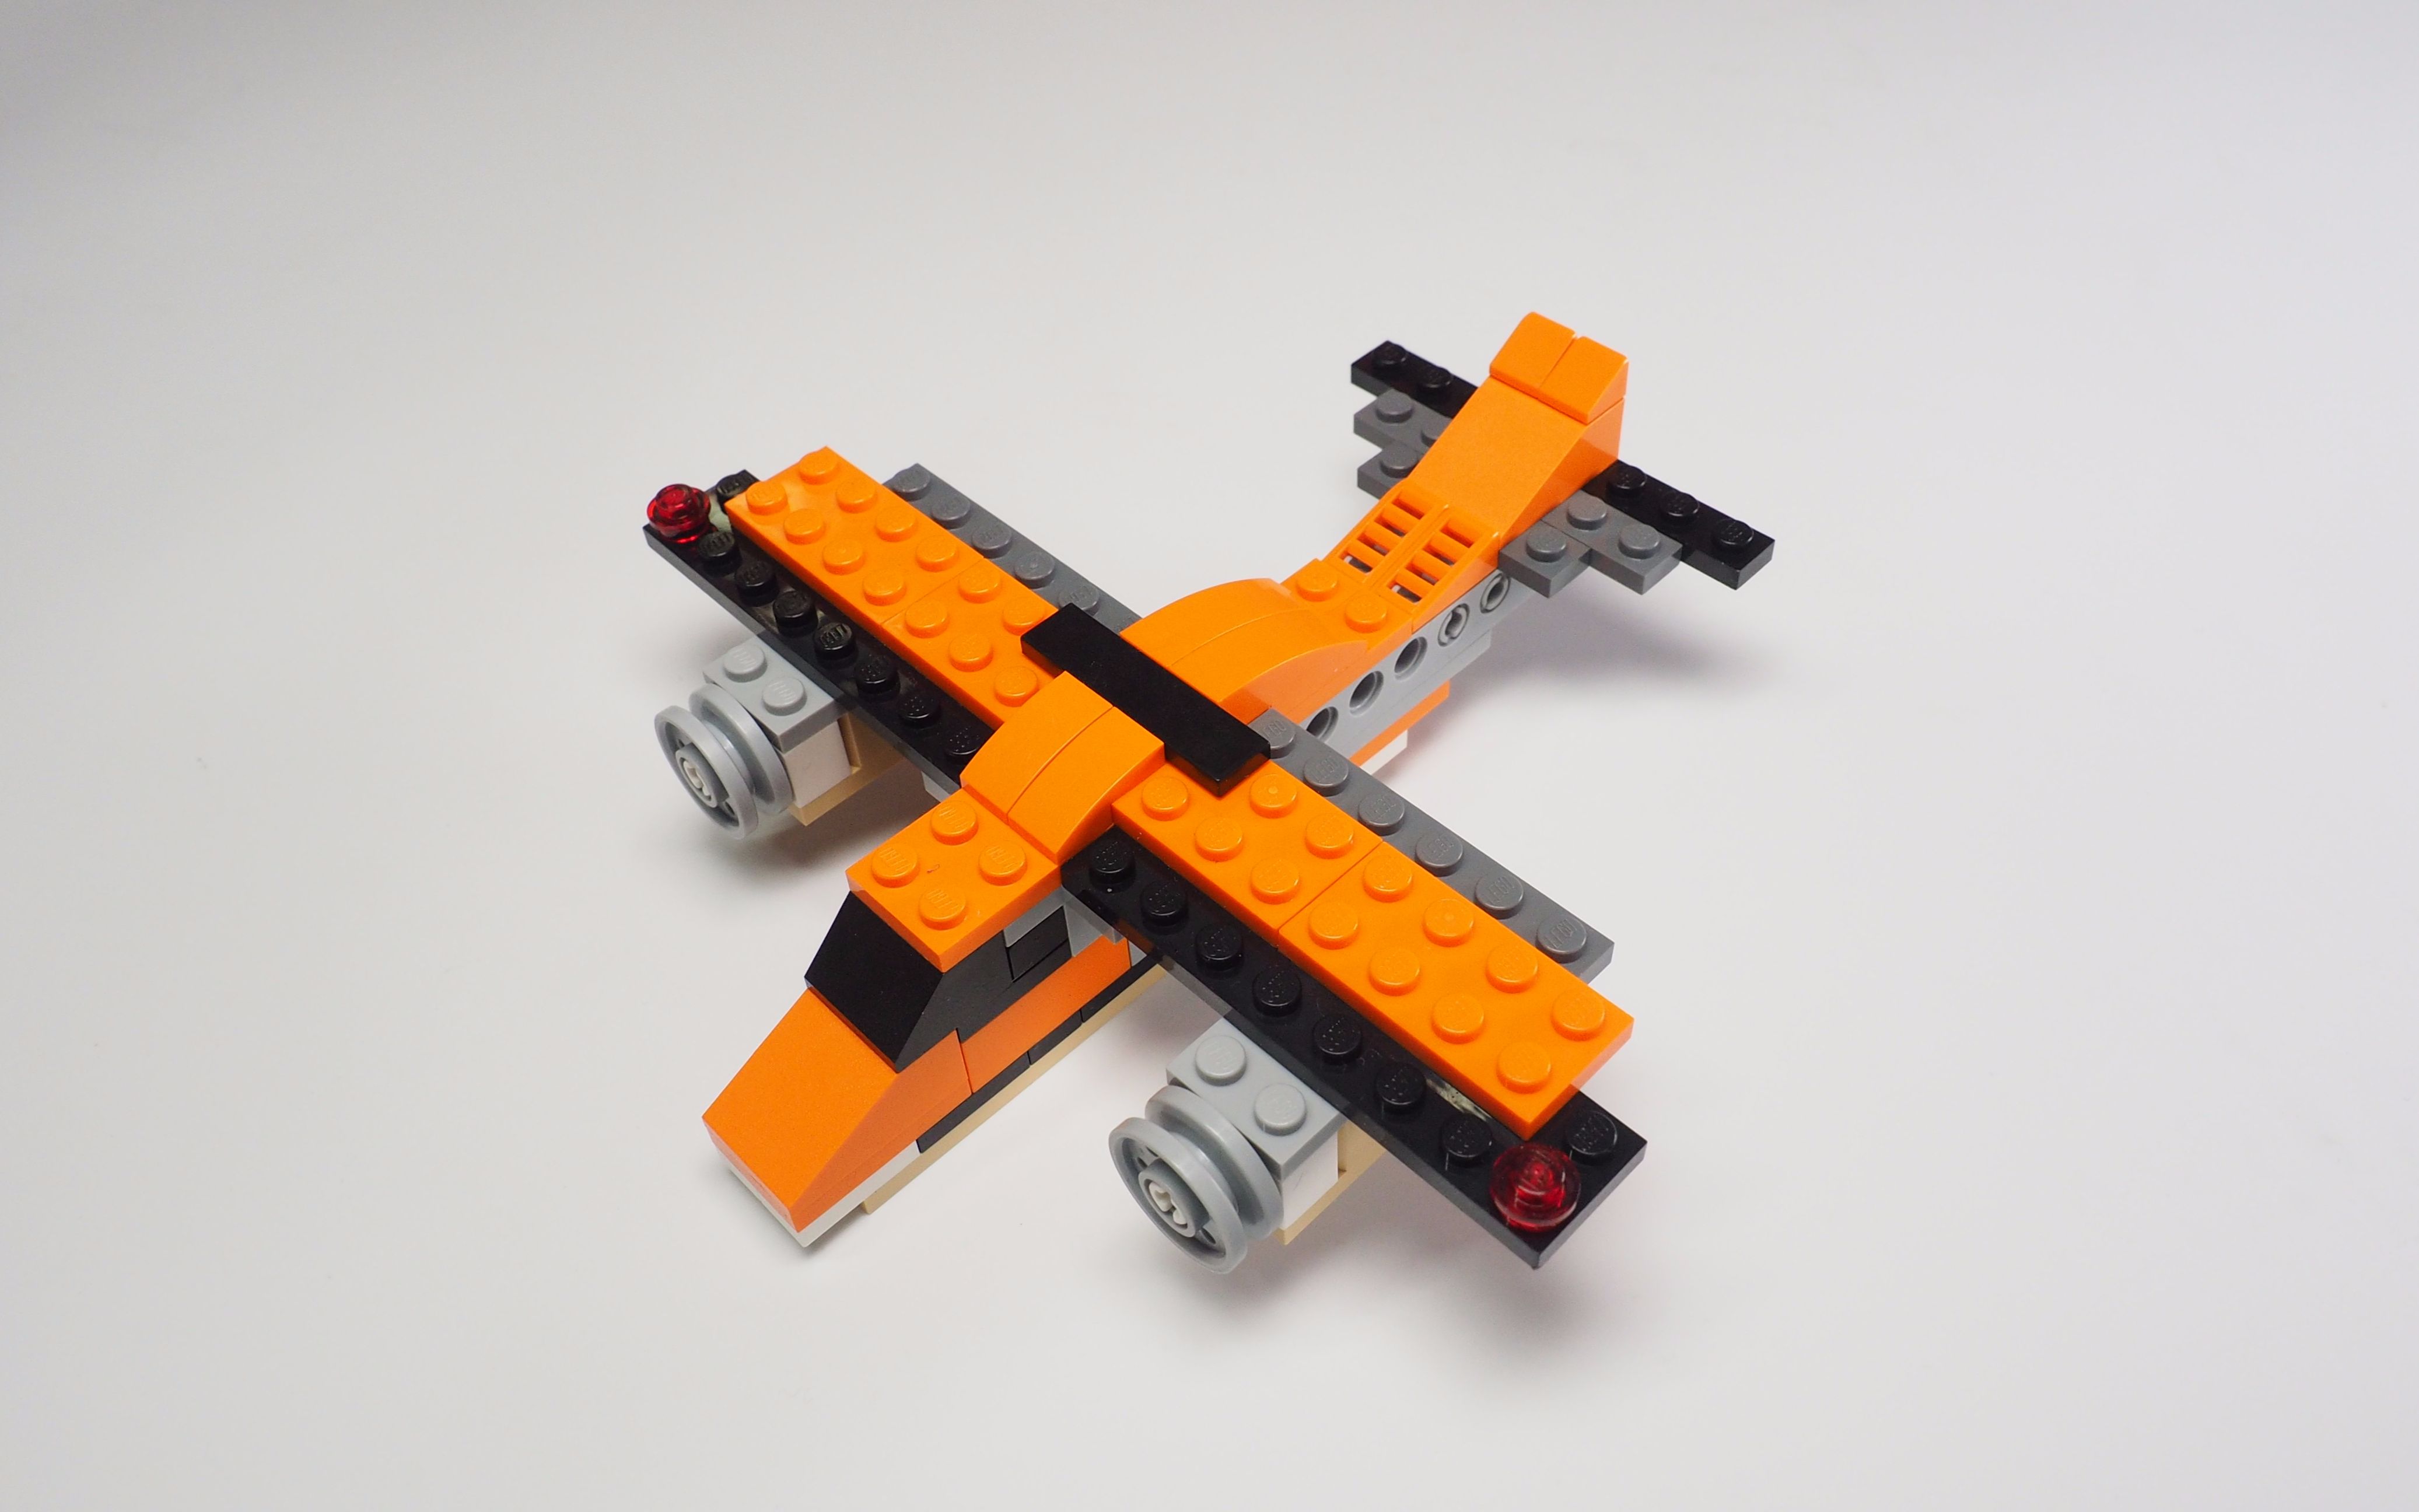 乐高飞机玩具模型组合-3D模型-模匠网,3D模型下载,免费模型下载,国外模型下载